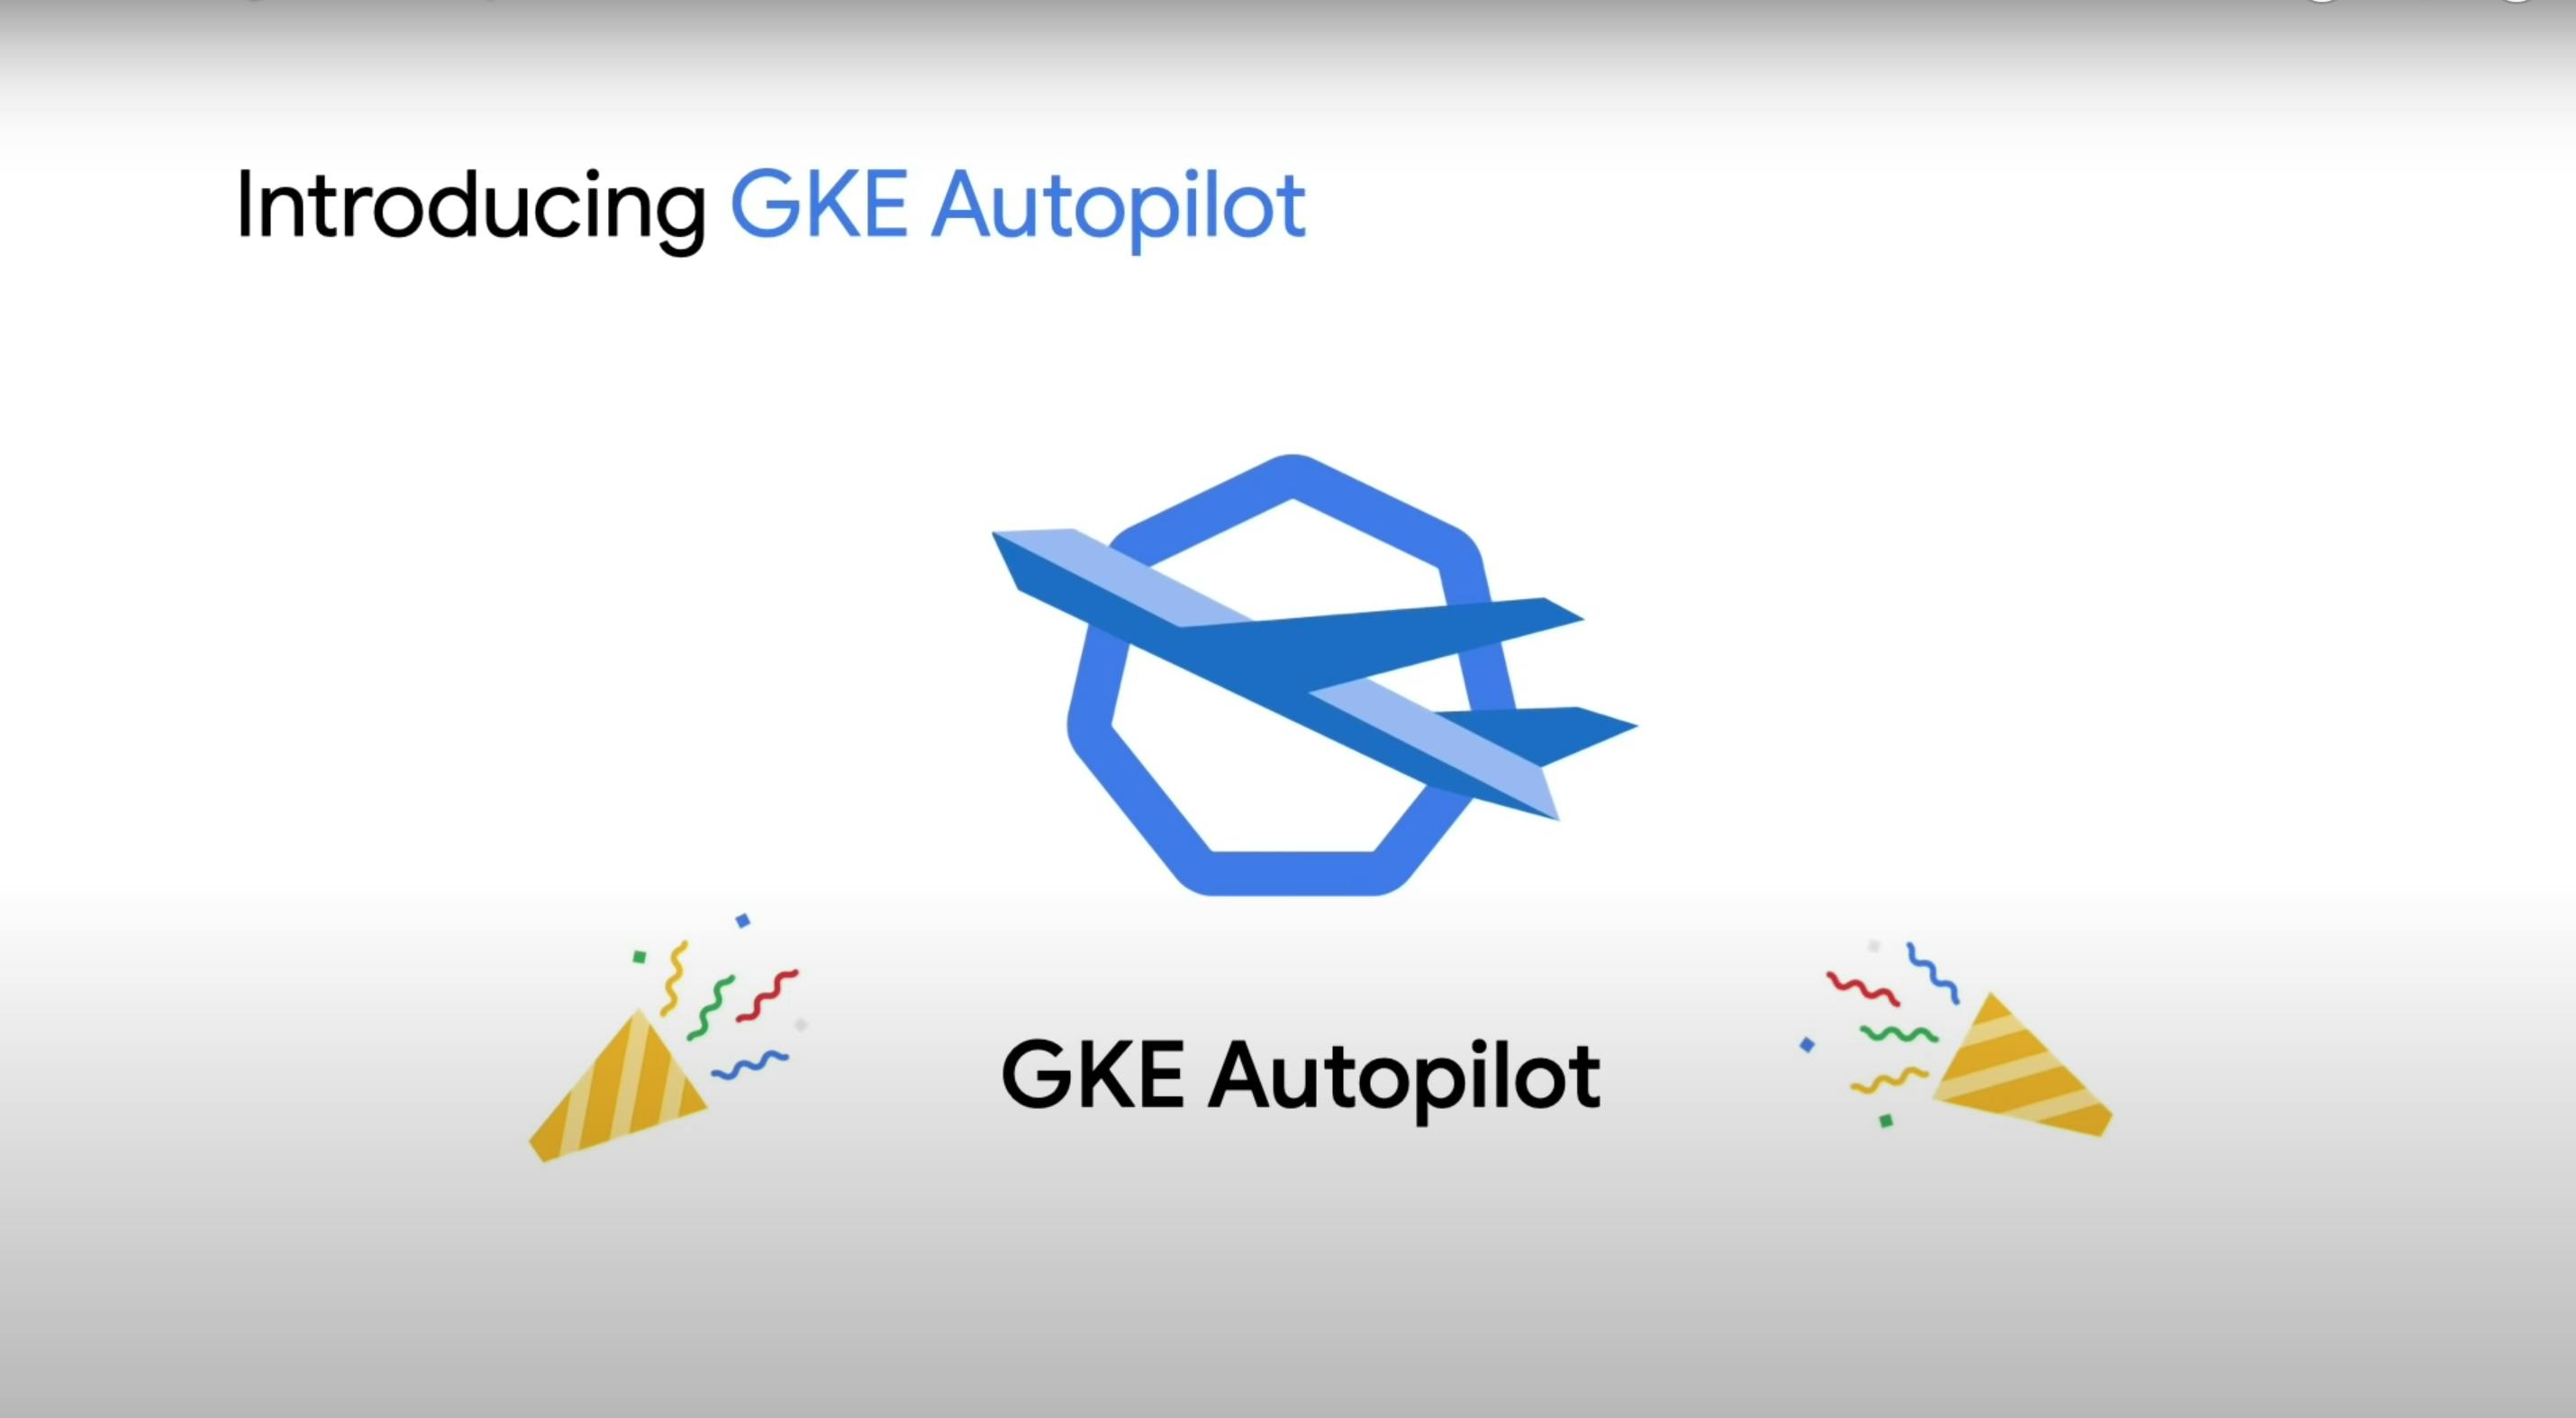 GKE Autopilot announcement